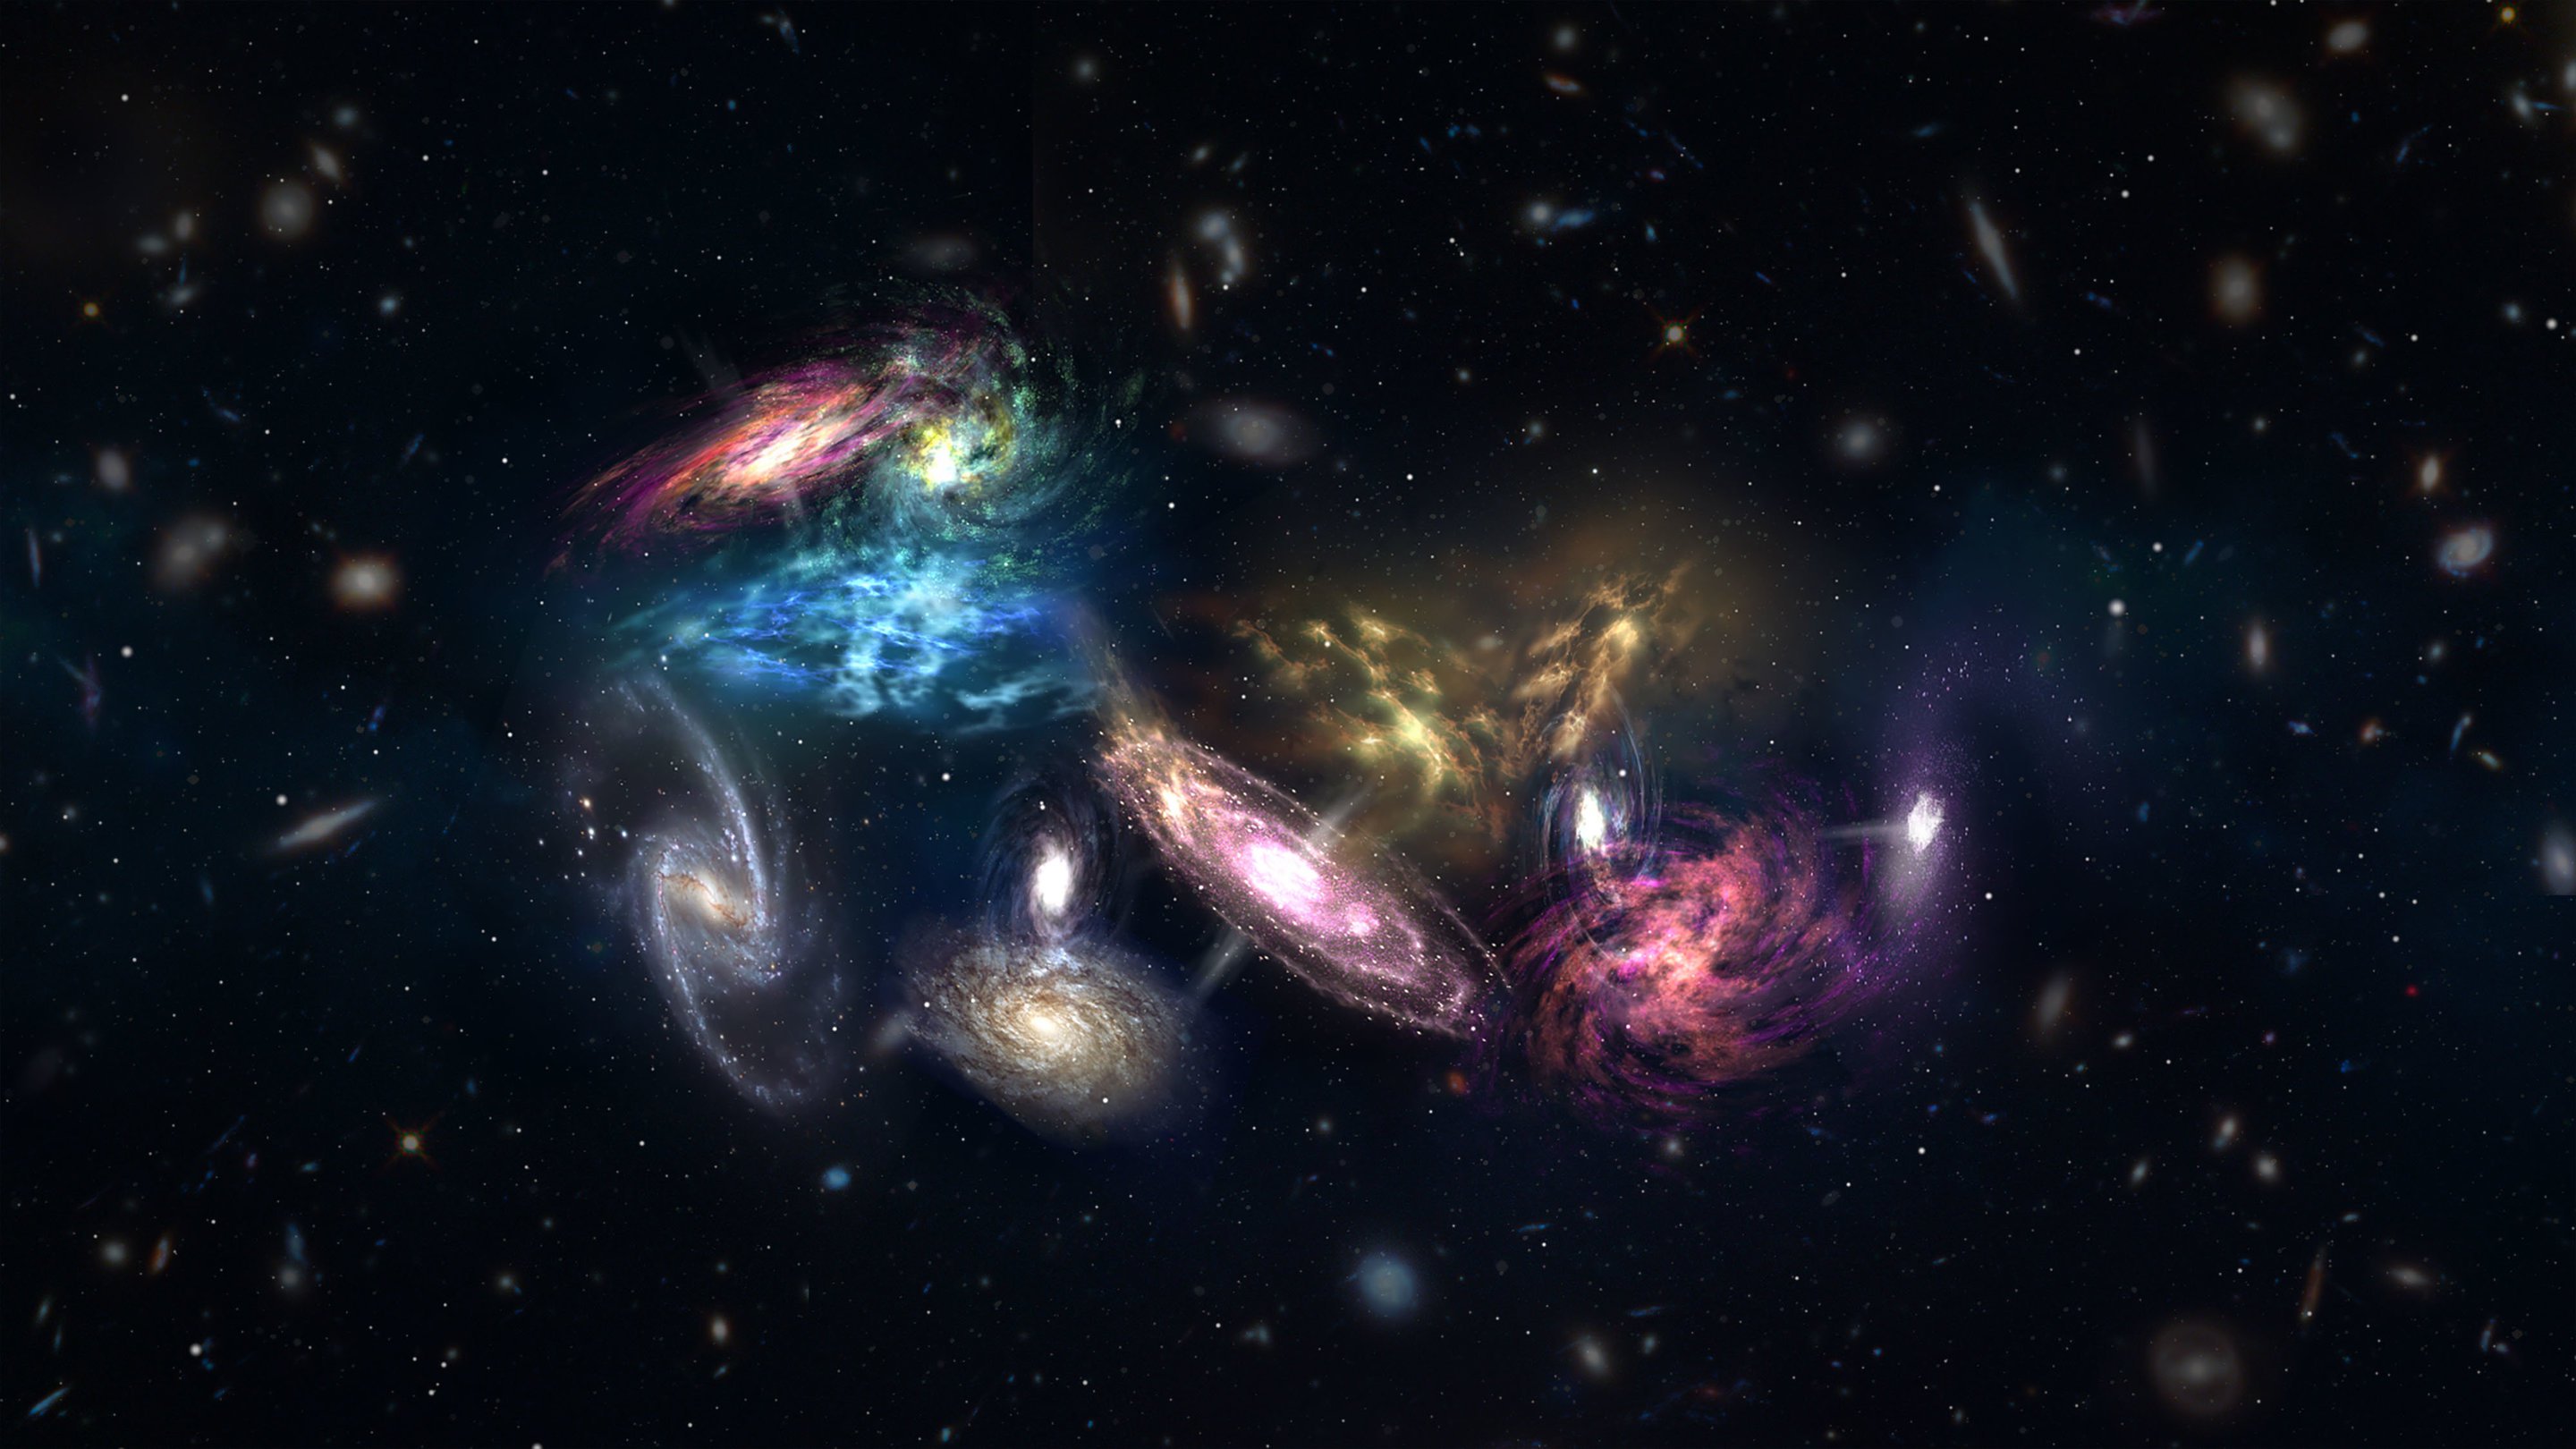 二つの銀河を見つけられませんでした暗黒物質です。 かがでしょうか。